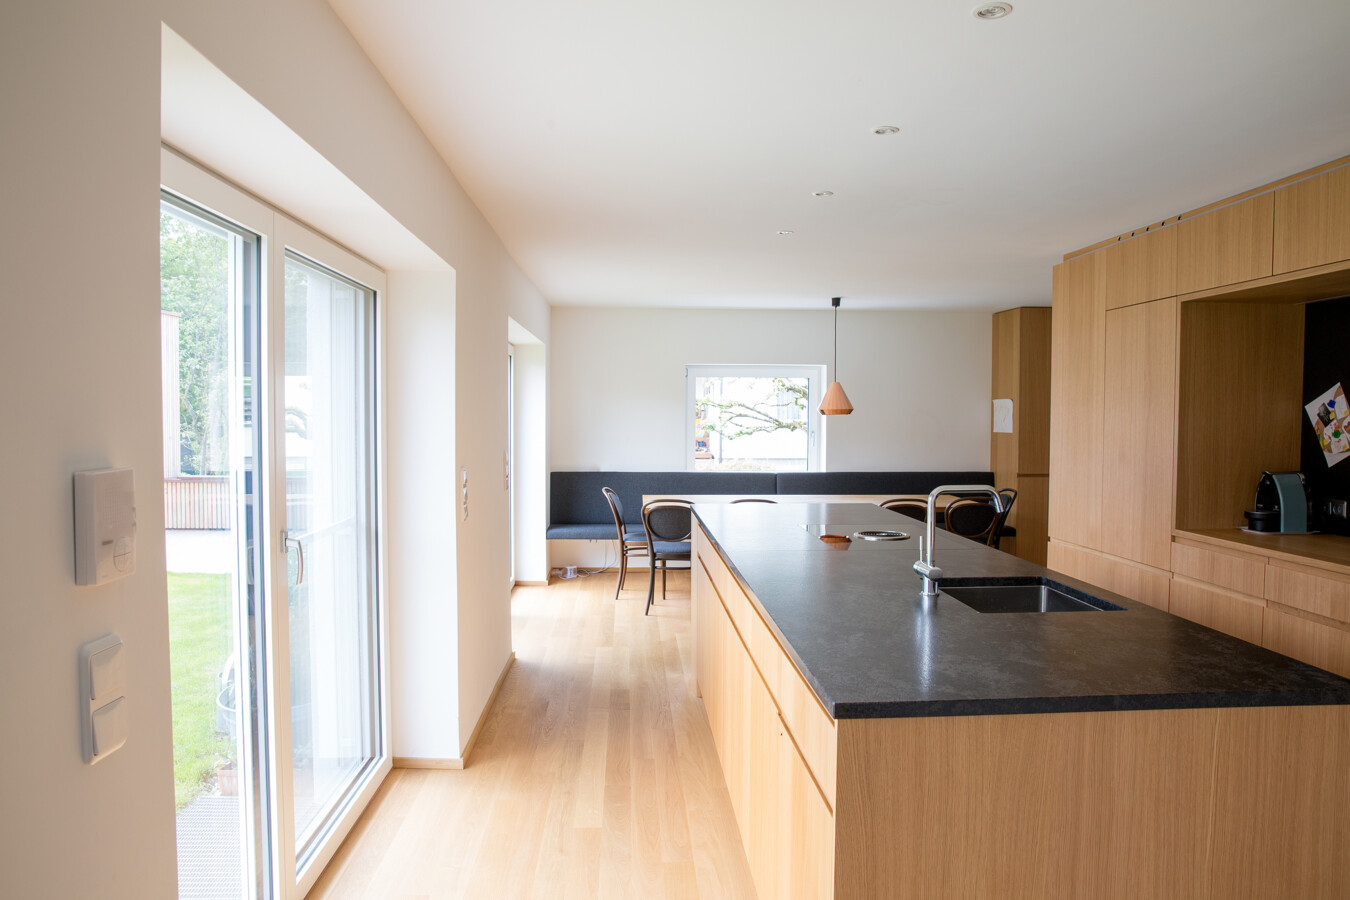 Umbau Einfamilienhaus Greussing-Pallavicini Küche mit Holzausstattung und Balkonfenster nach draußen